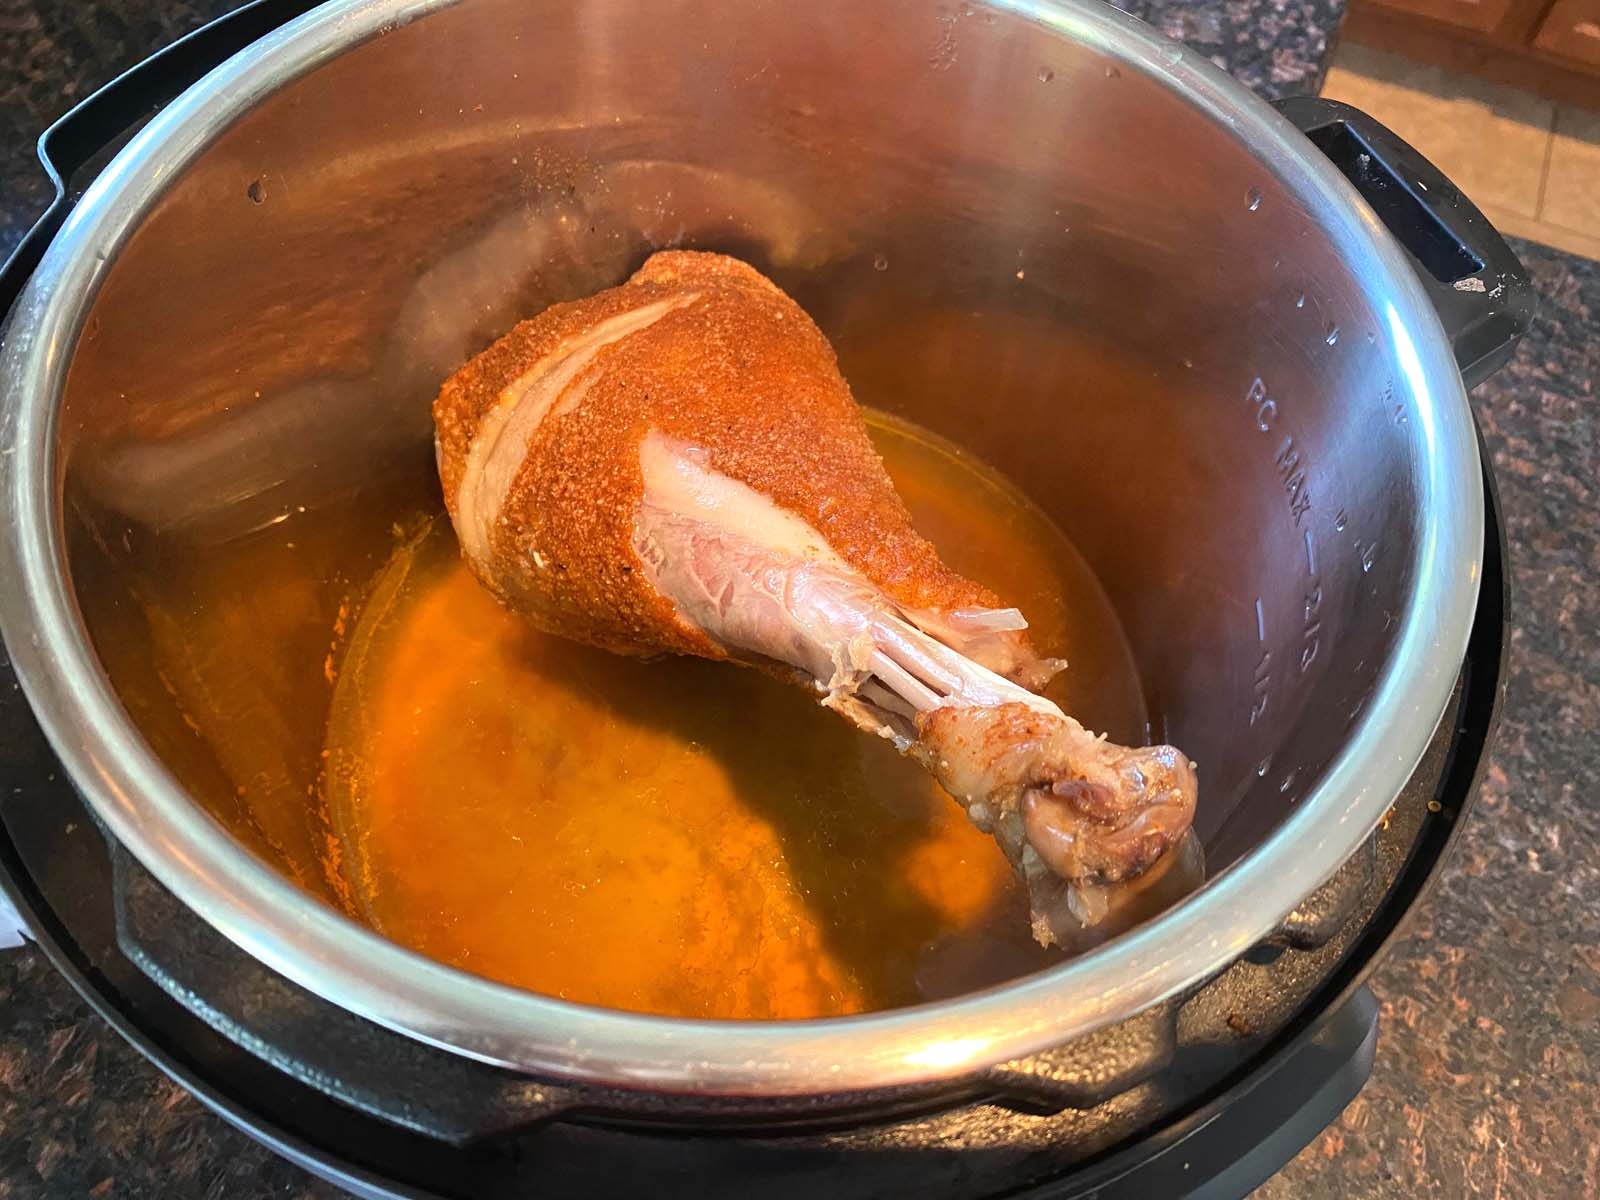 Turkey leg in an Instant Pot.